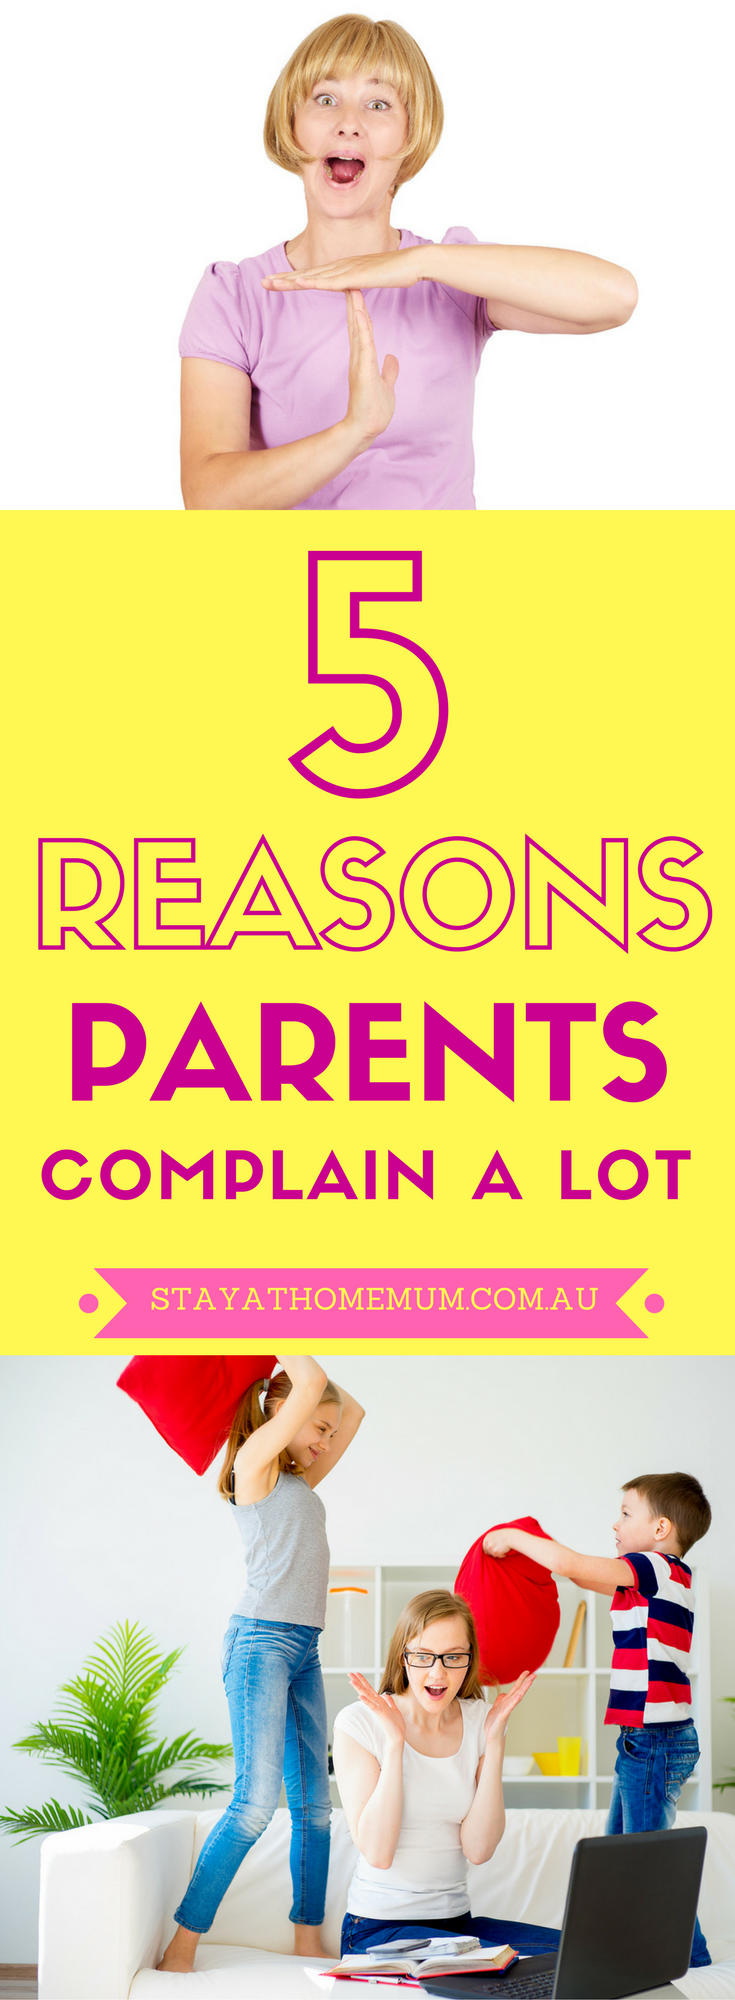 5 Reasons Parents Complain A Lot (1)